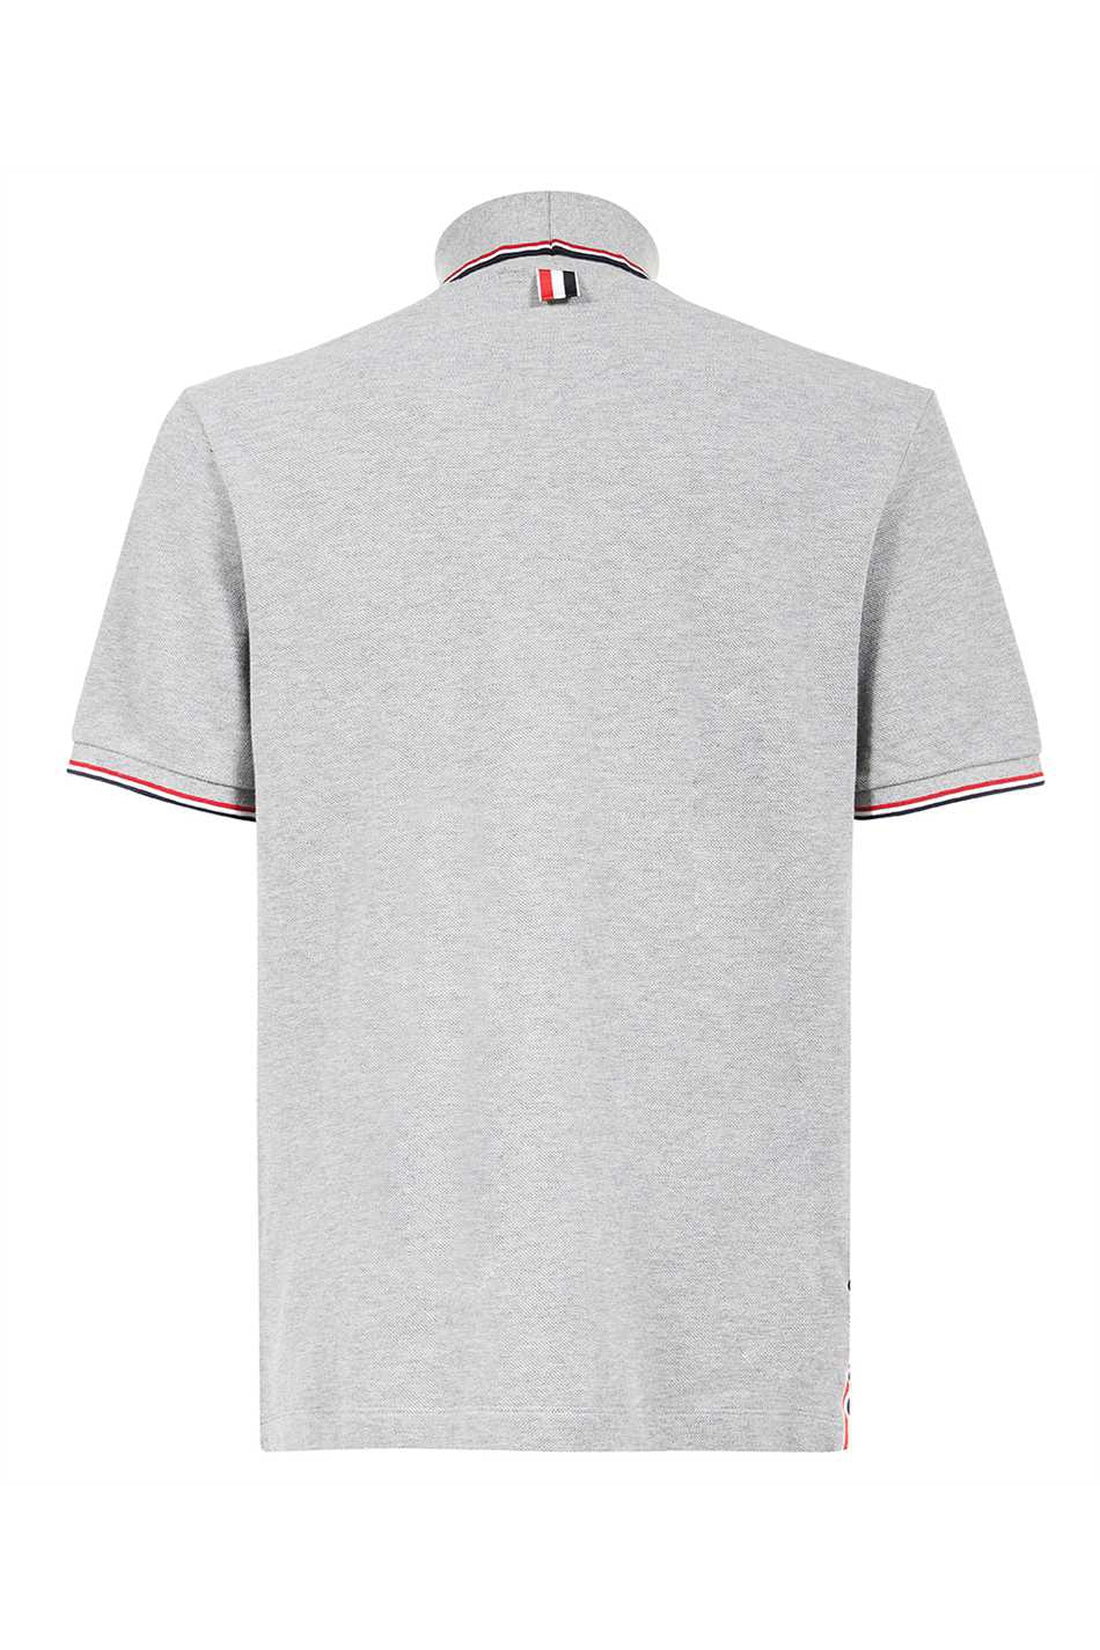 Thom Browne-OUTLET-SALE-Cotton T-shirt-ARCHIVIST